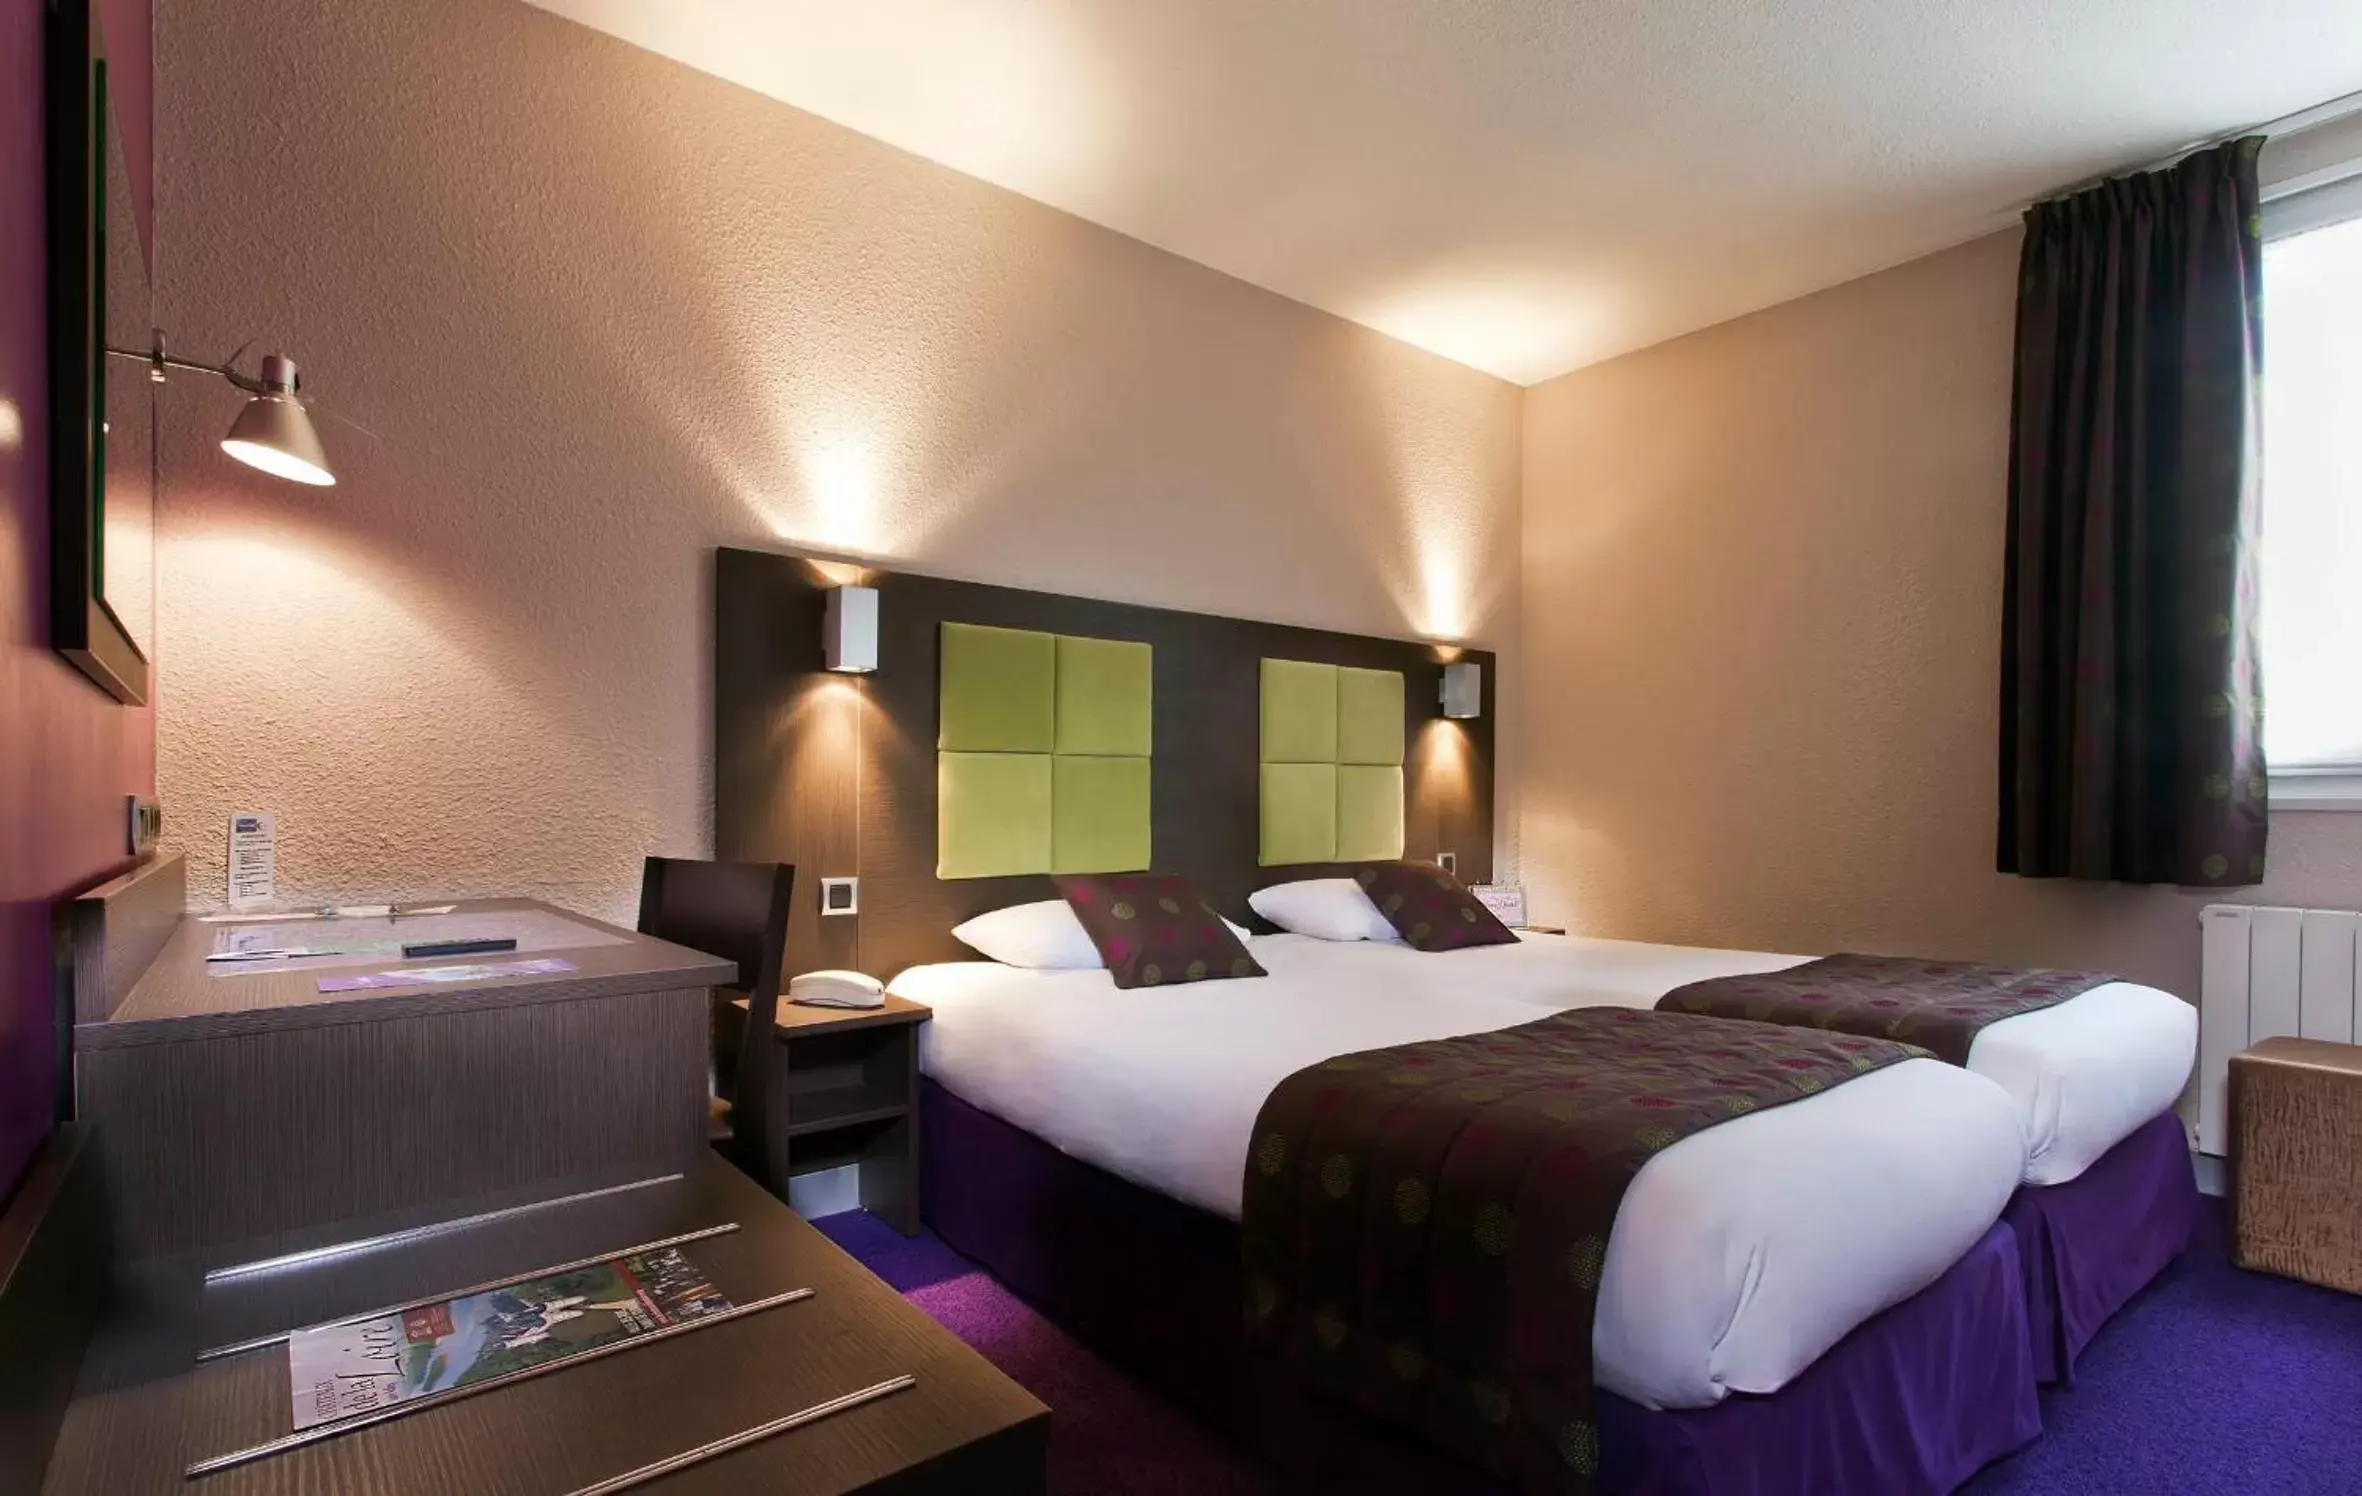 Bedroom, Bed in Tourhotel Blois